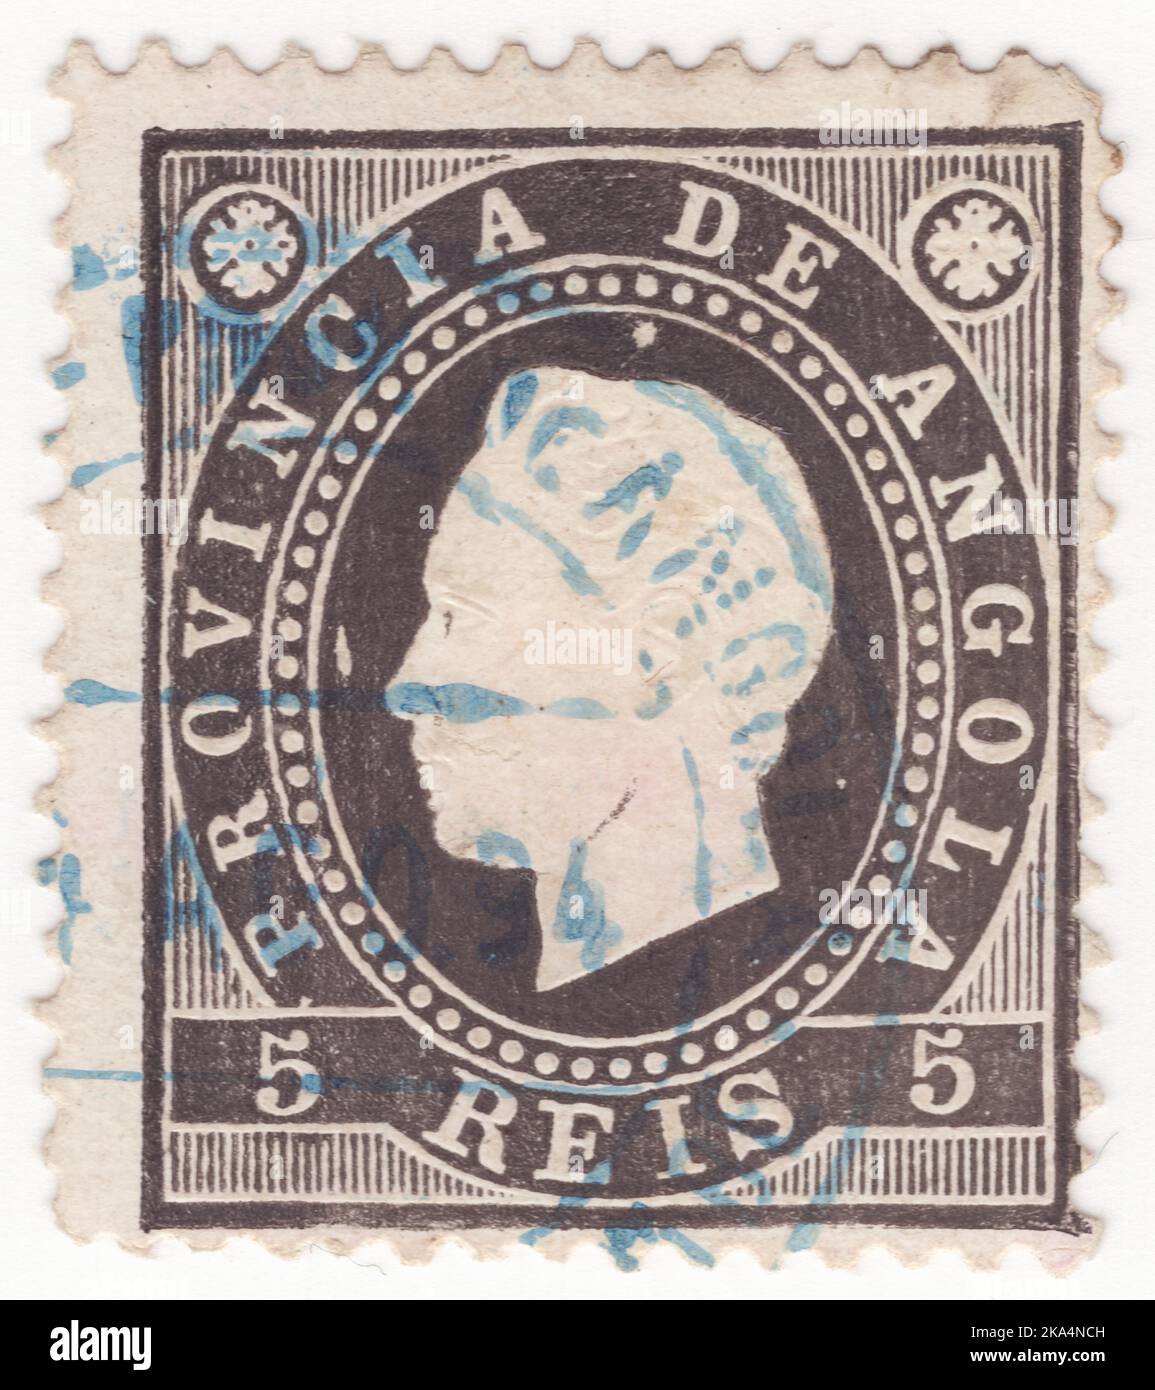 ANGOLA - 1870: Eine schwarze Briefmarke von 5 reis, die das Porträt von König Luis 'Emposed' zeigt. Dom Luís I., bekannt als der Volkskönig, war Mitglied des Herrscherhauses von Braganza und König von Portugal von 1861 bis 1889. Der zweite Sohn von Königin Maria II. Und ihrer Gemahlin, König Ferdinand, trat nach dem Tod seines älteren Bruders König Pedro V. auf den Thron Stockfoto